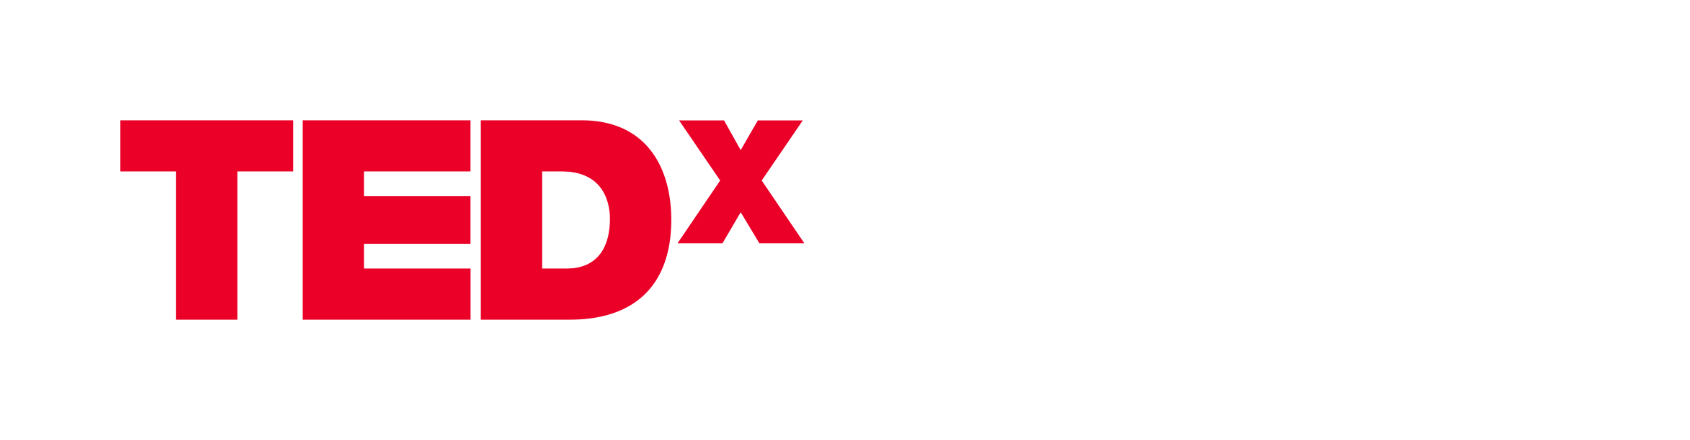 TEDXNHCE